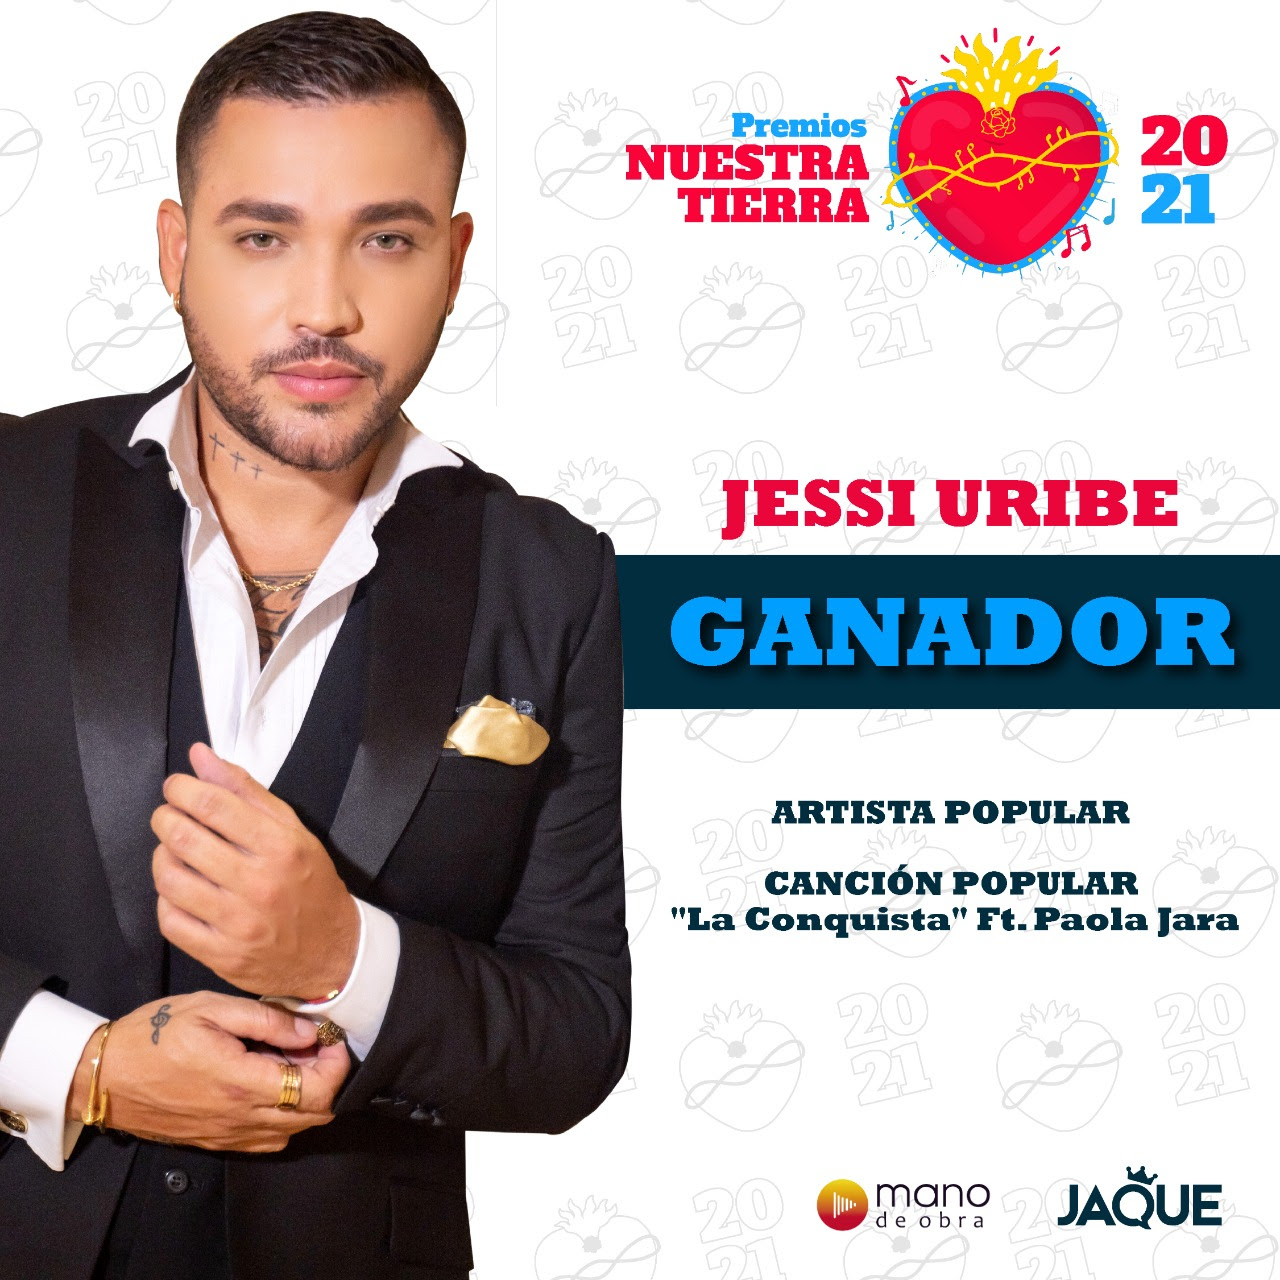 Jessi Uribe triunfa a ritmo de música popular en los premios nuestra tierra 2021